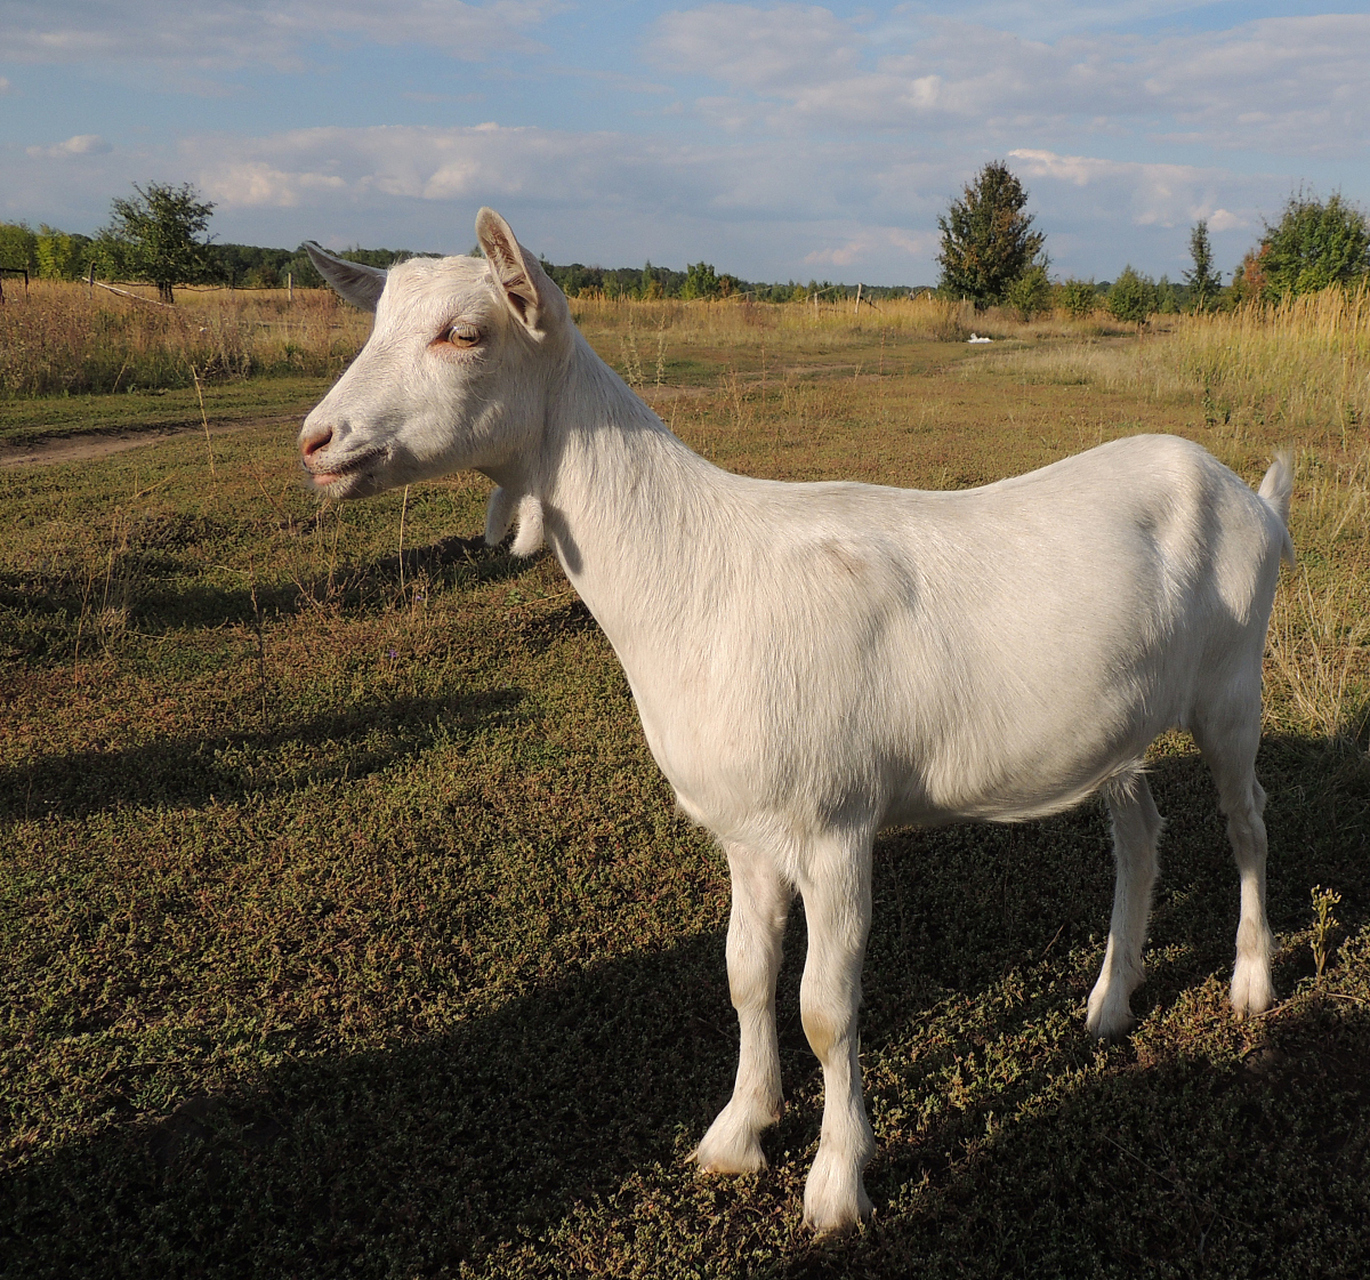 纯种杜泊羊的尾巴细长,浓密柔软,具有保暖和保持平衡的实用功能,同时